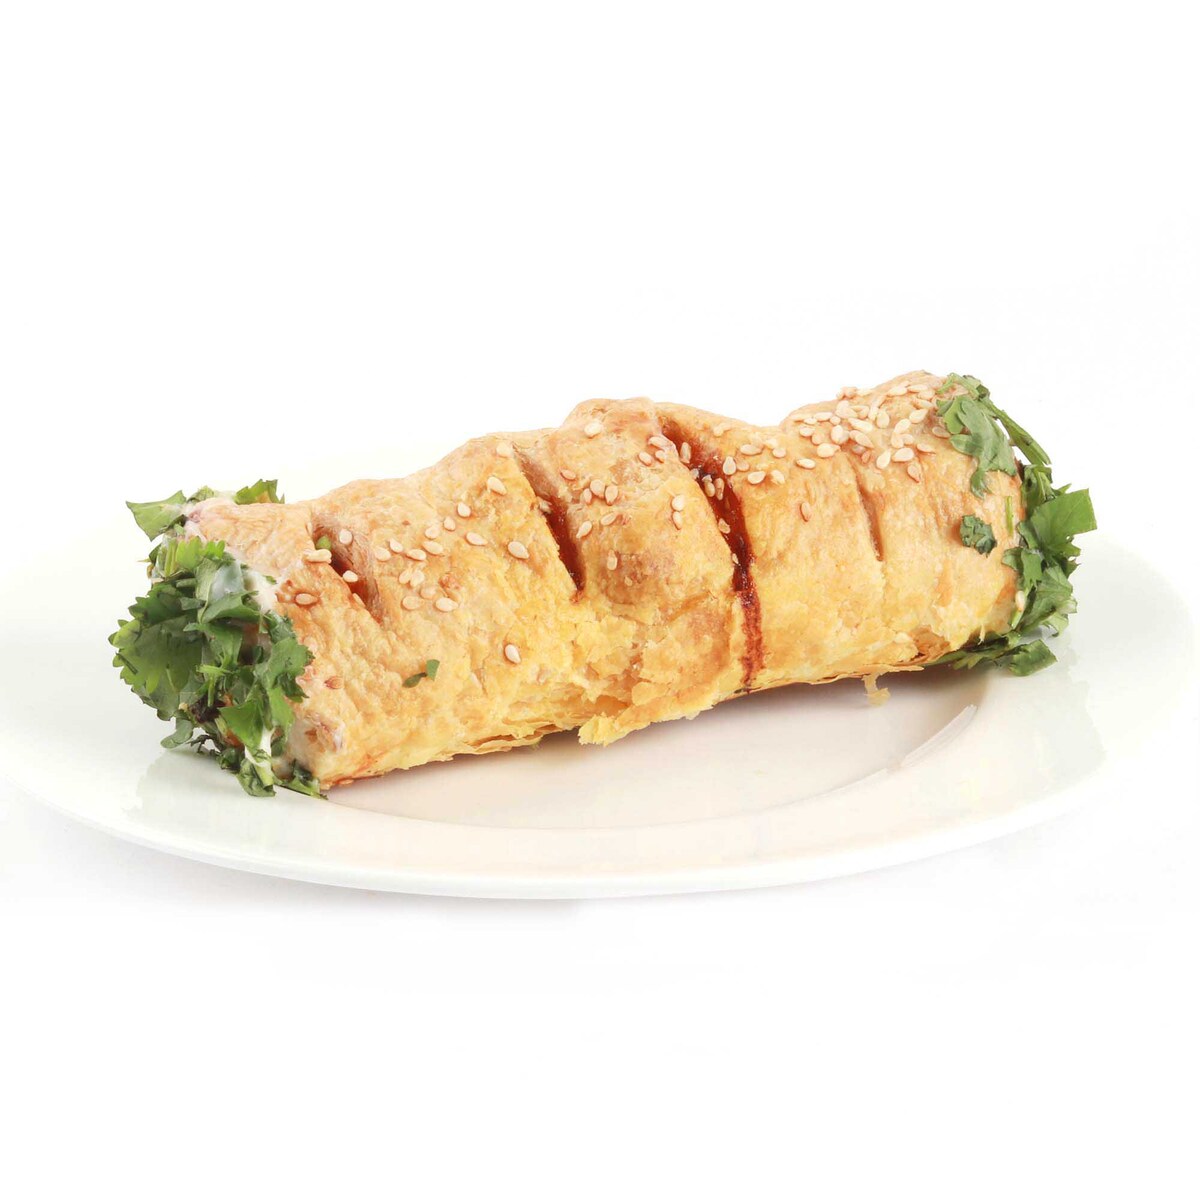 Chicken Priyazo Soft Roll 1 pc